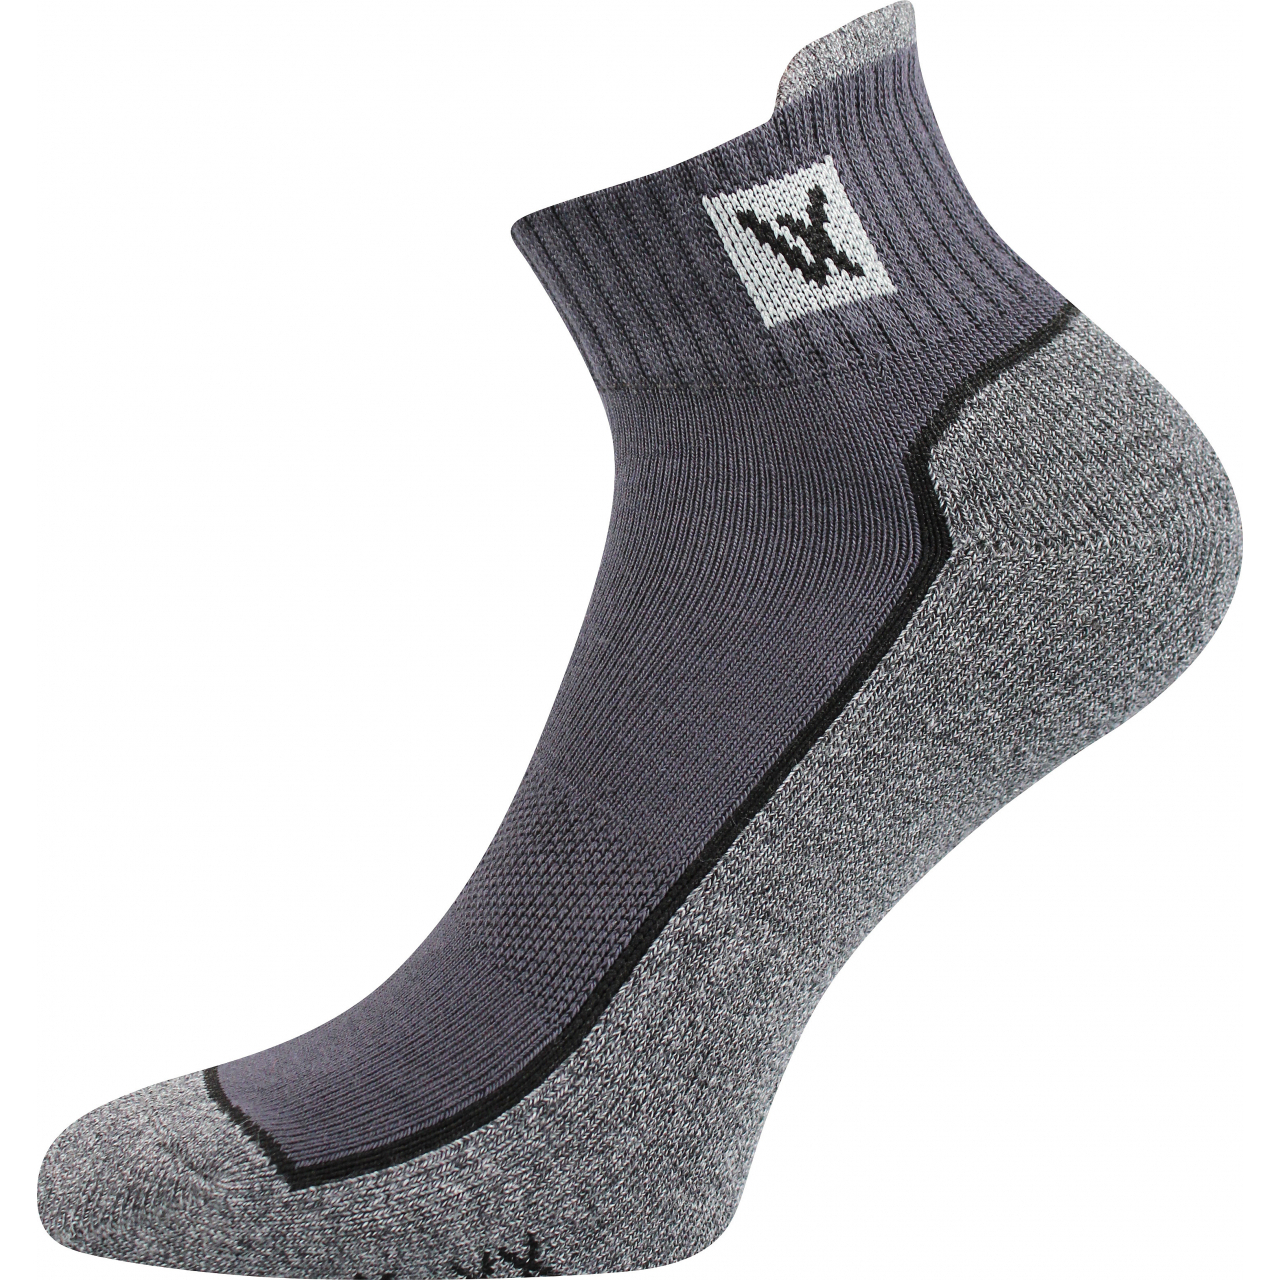 Ponožky unisex sportovní Voxx Nesty 01 - tmavě šedé-šedé, 39-42